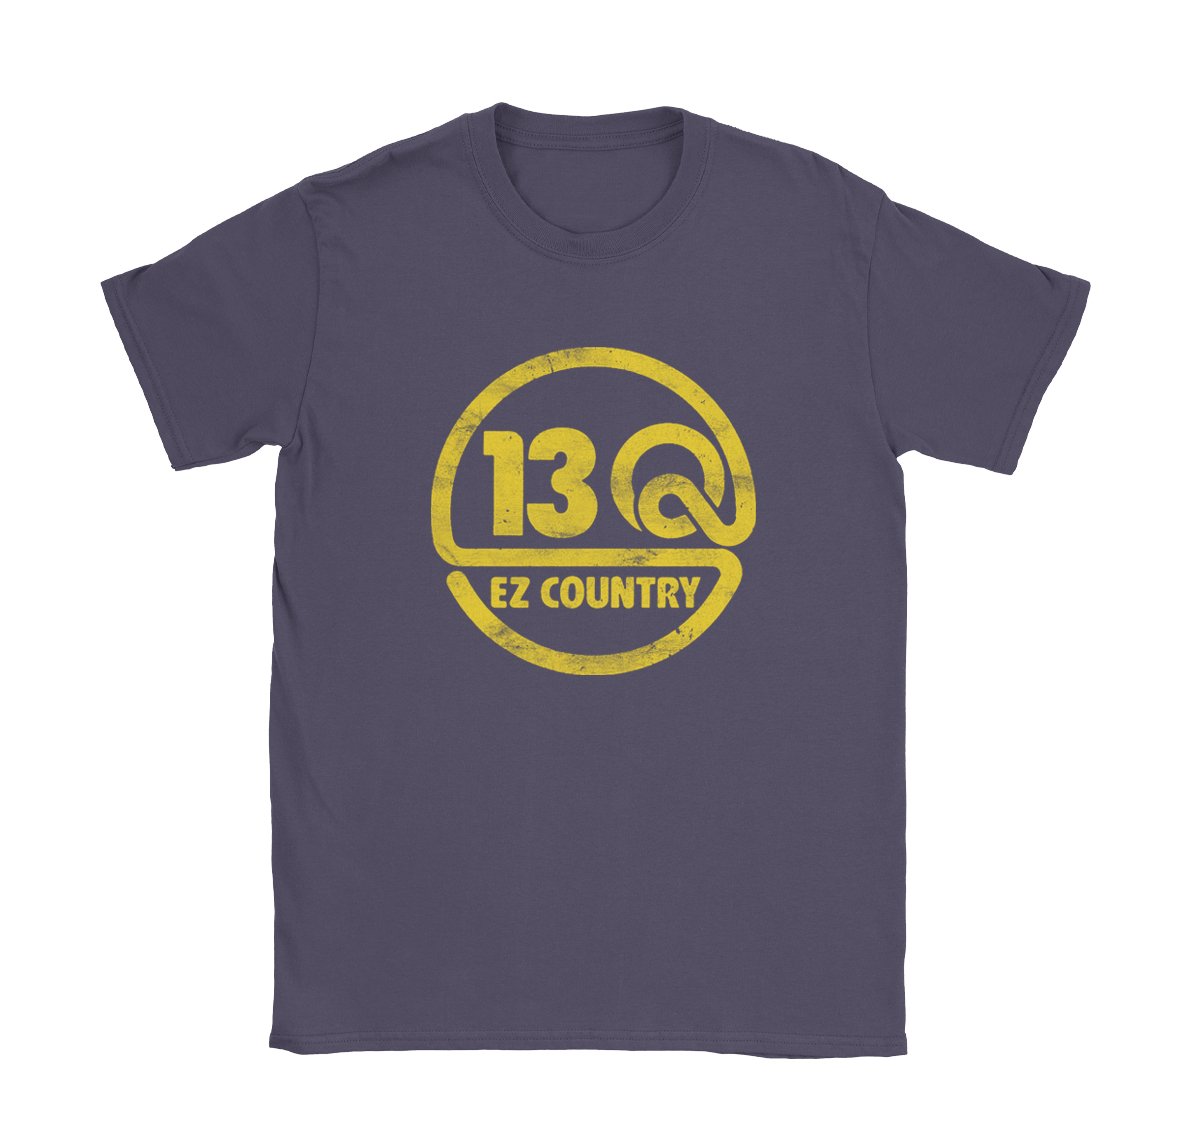 13 Q EZ Country - Black Cat MFG - T-Shirt